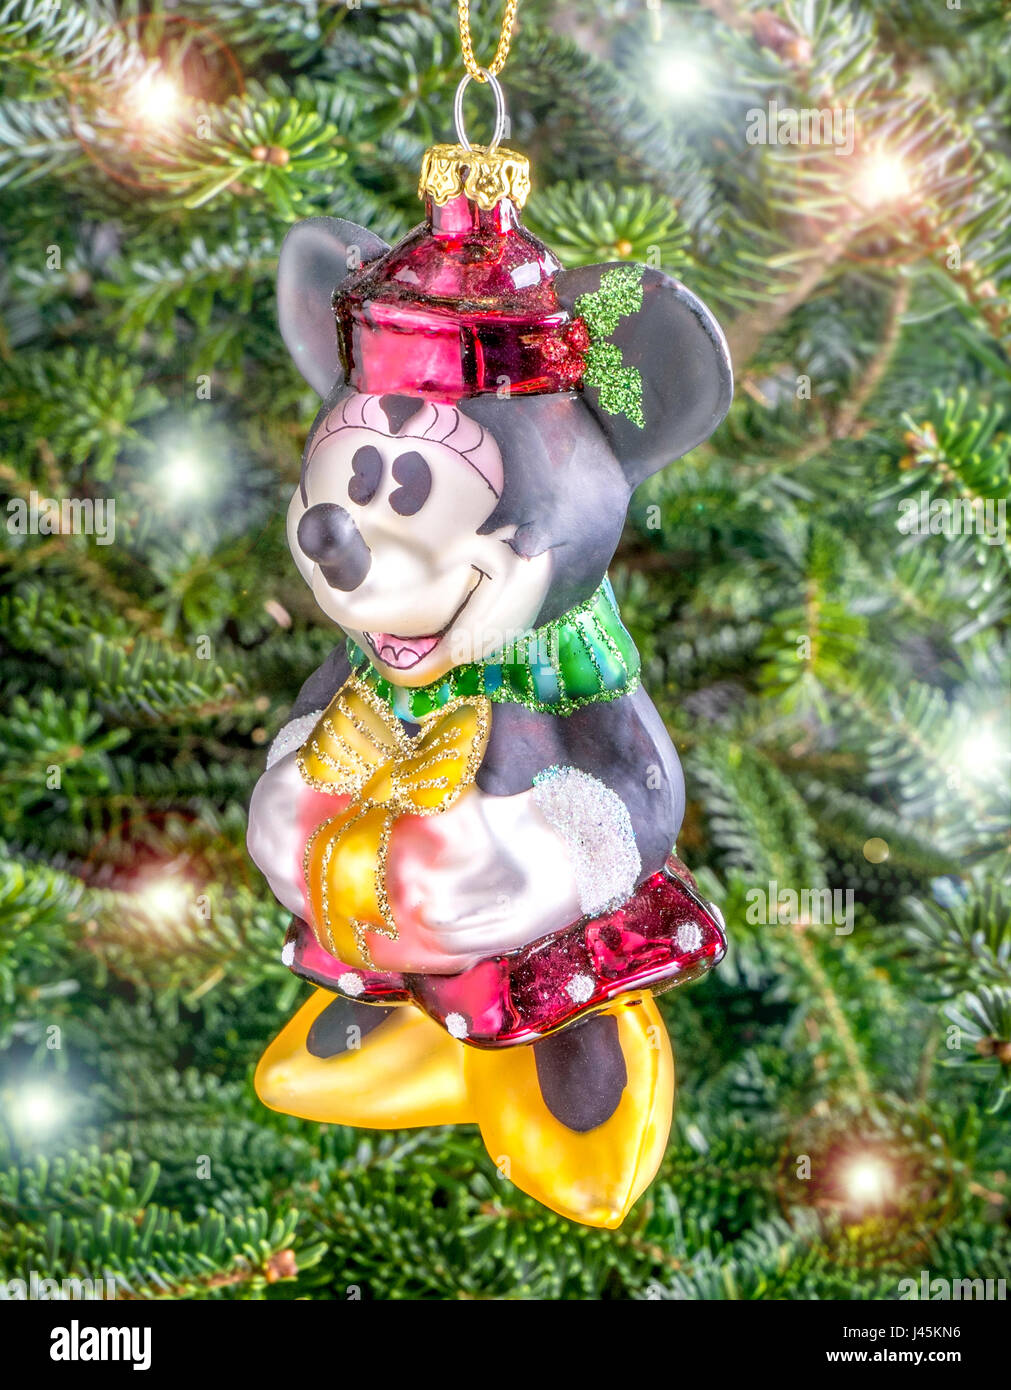 Weihnachtskugel hängen von einem Baum in der Form von Minnie Mouse Stockfoto